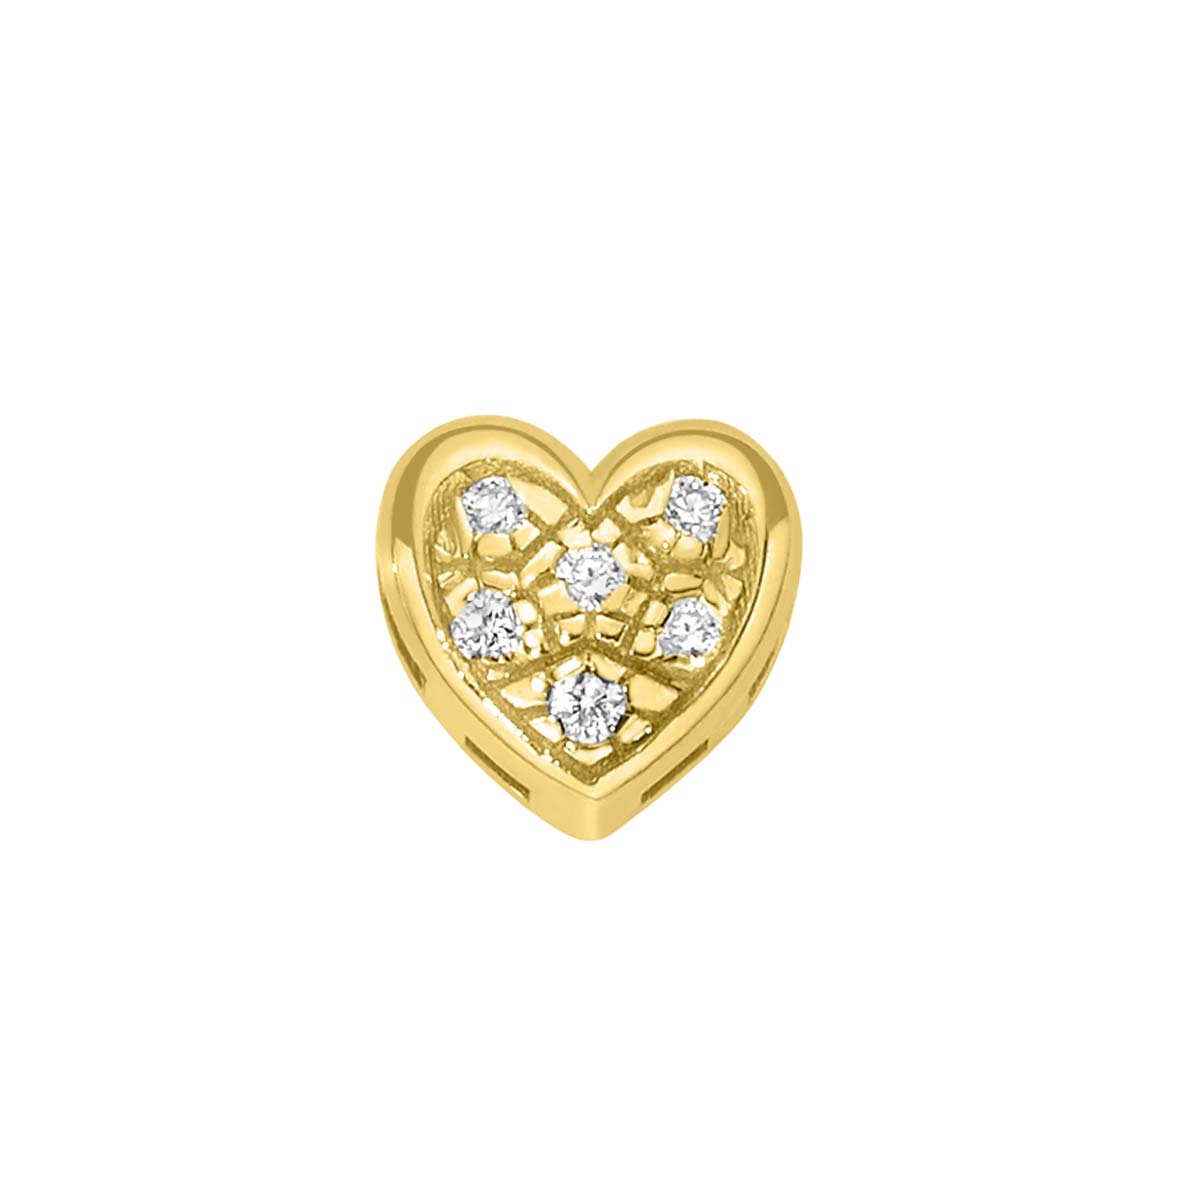 Elements | Cuore Piatto in oro giallo e diamanti